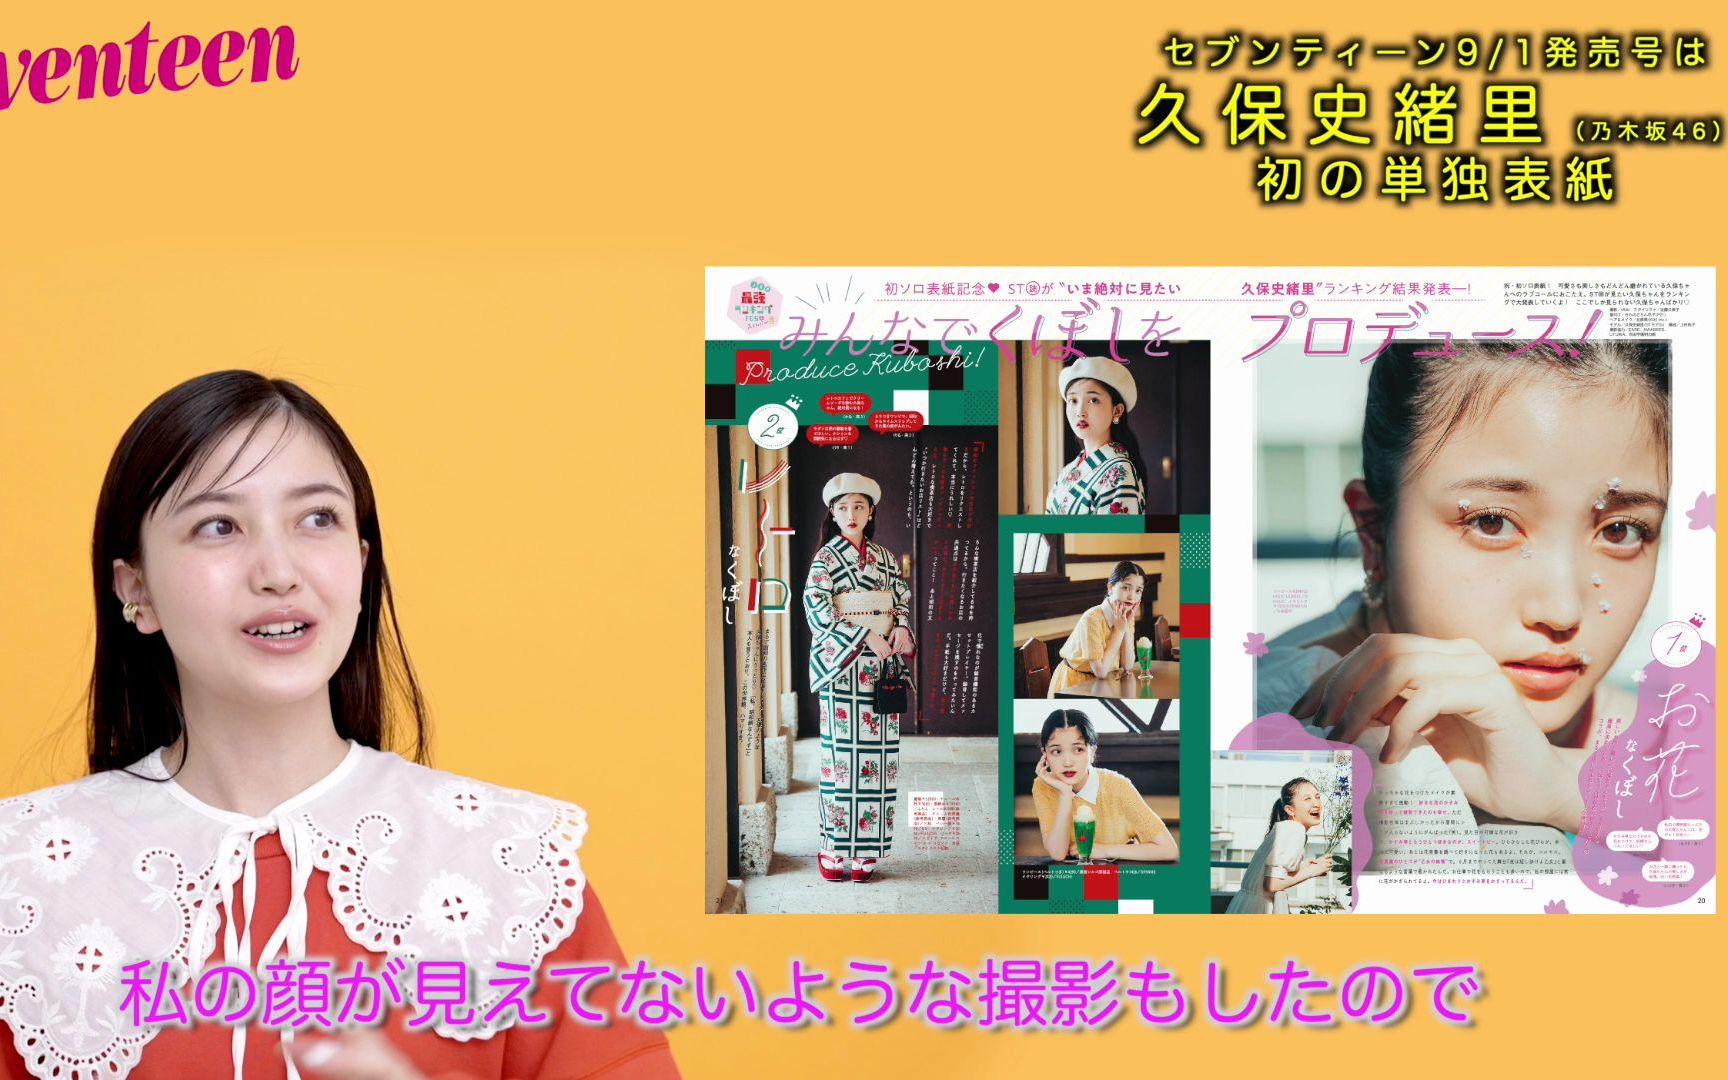 【公式】喜讯!!!恭喜久保史绪里、首次单独刊登于《Seventeen》的杂志封面！9月1日发售号。